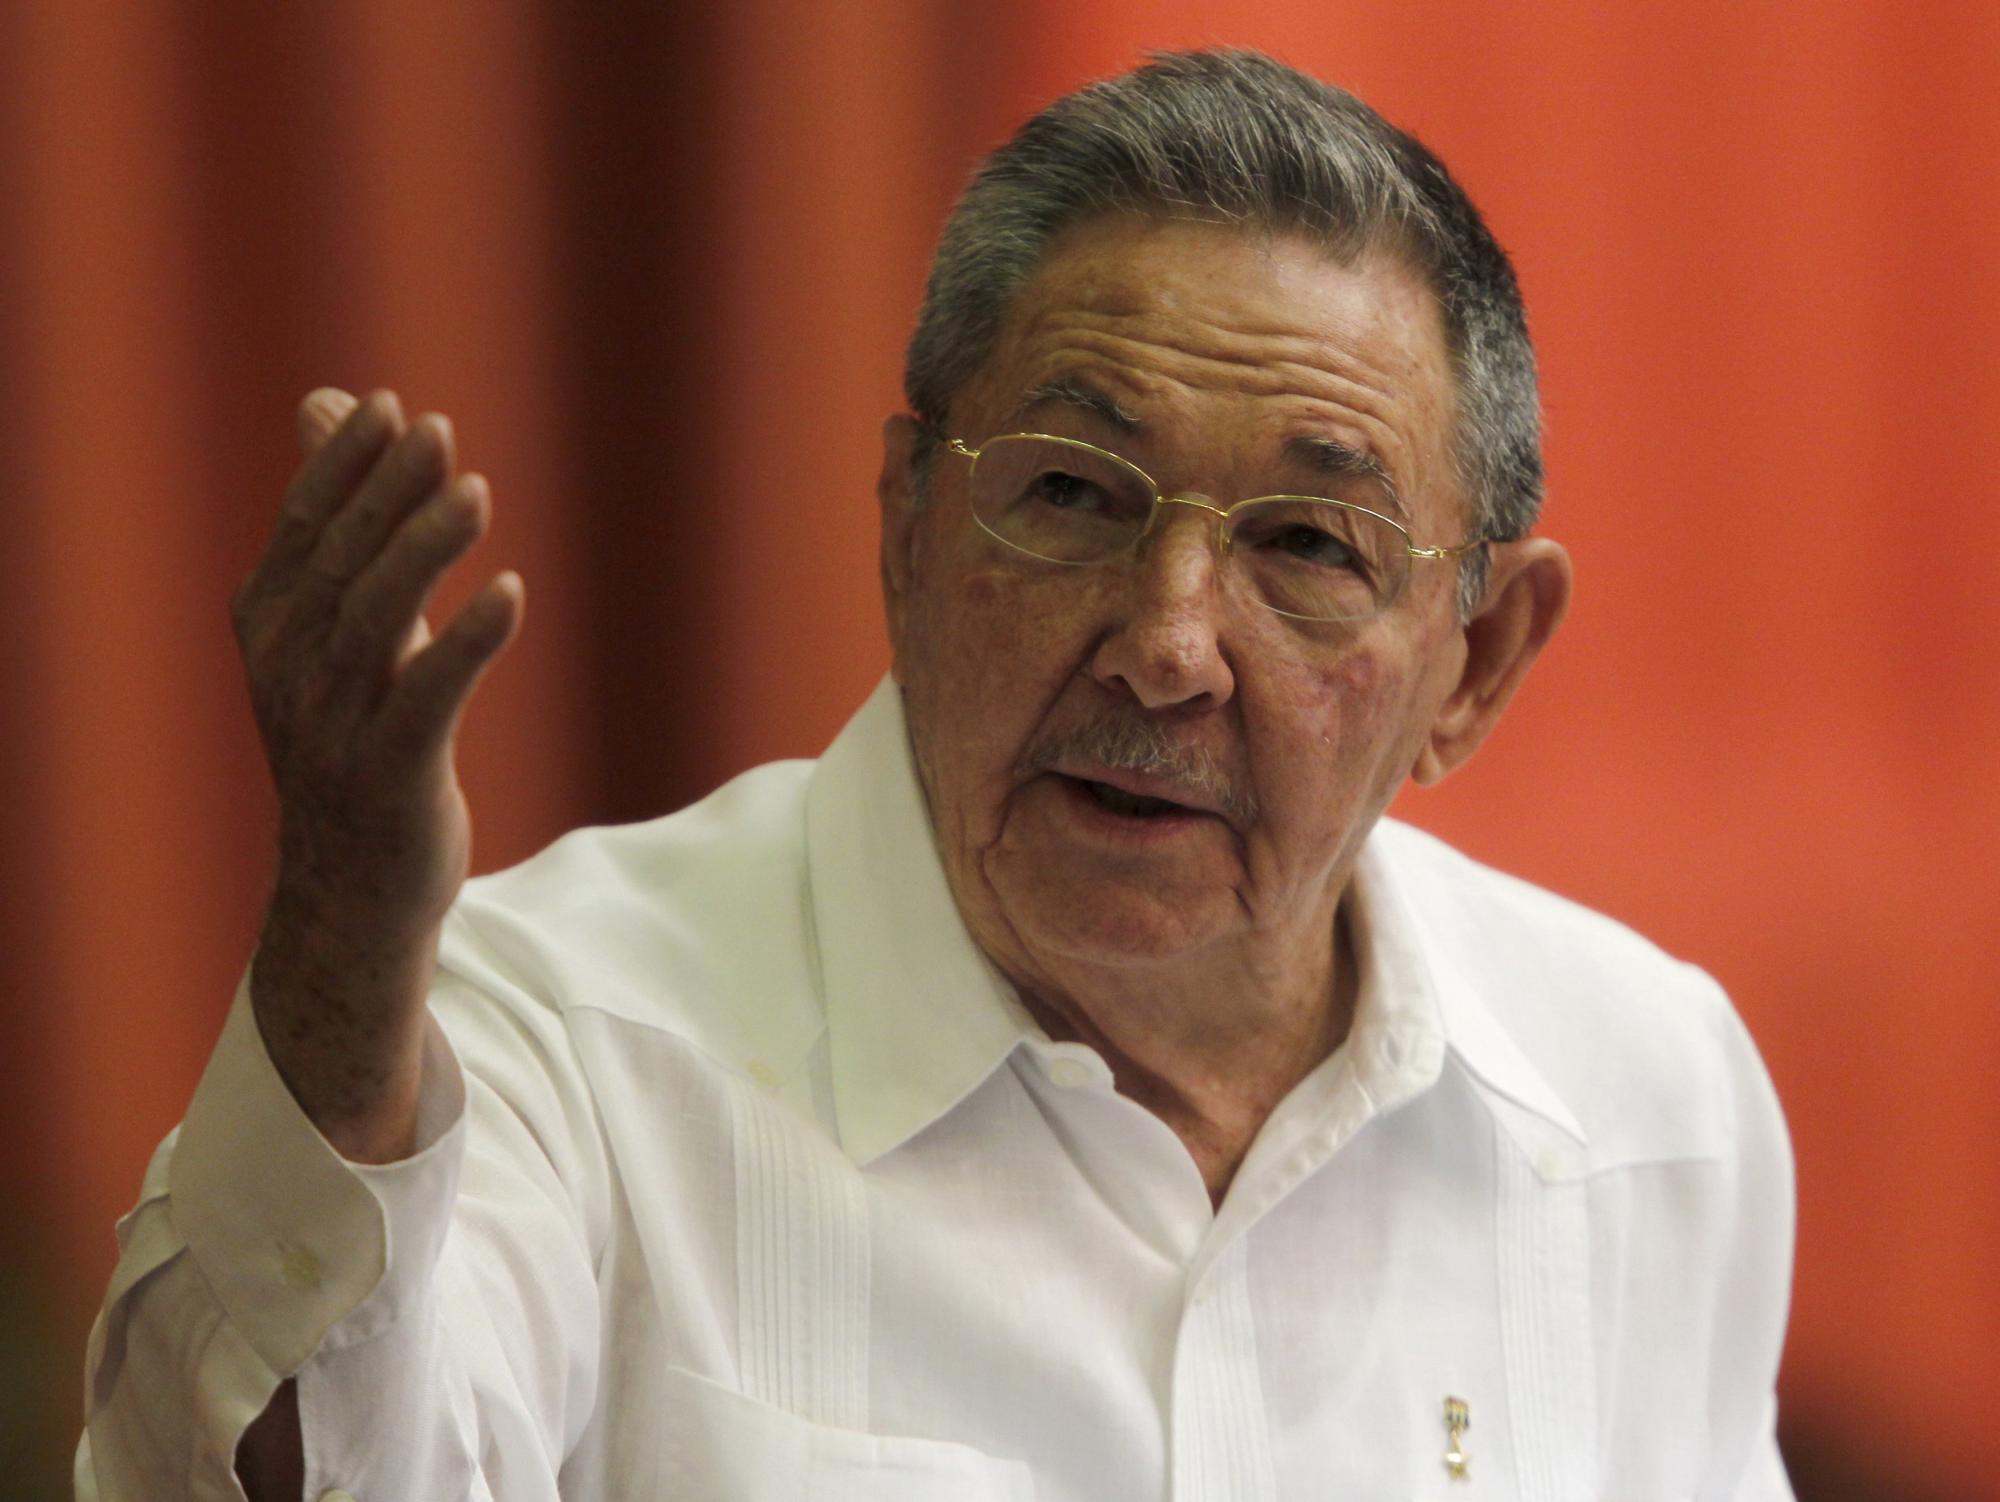 古巴14年来首次召开党代会 劳尔首提领导人任期限制